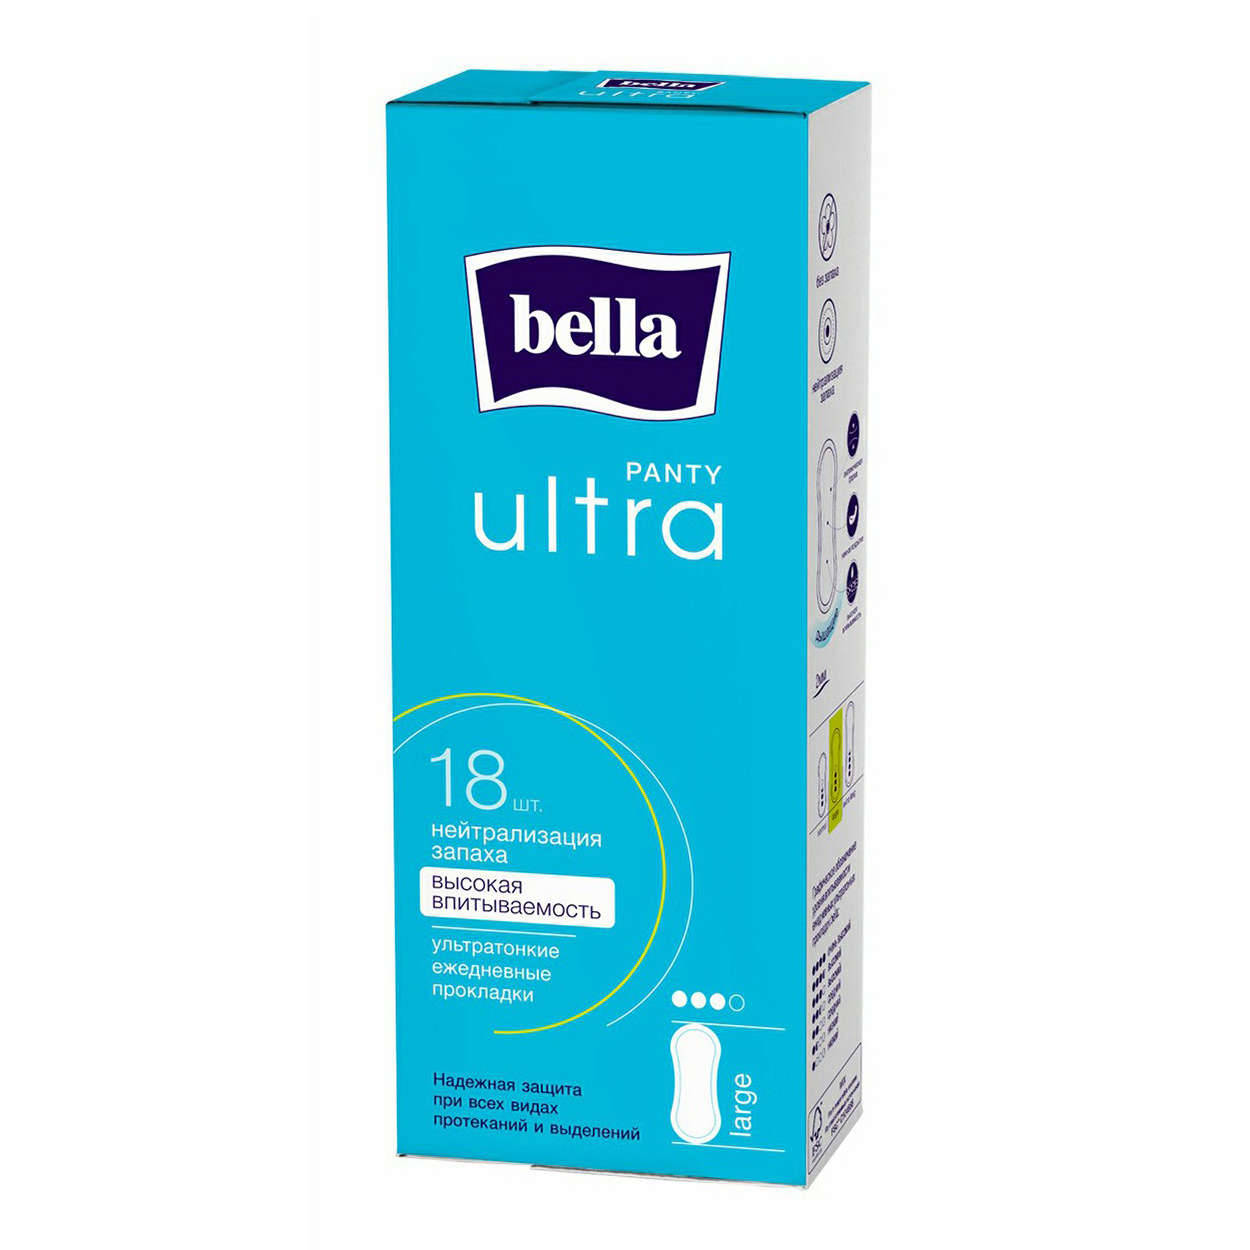 Прокладки без крылышек ежедневные Bella Panty Ultra Large 18 шт